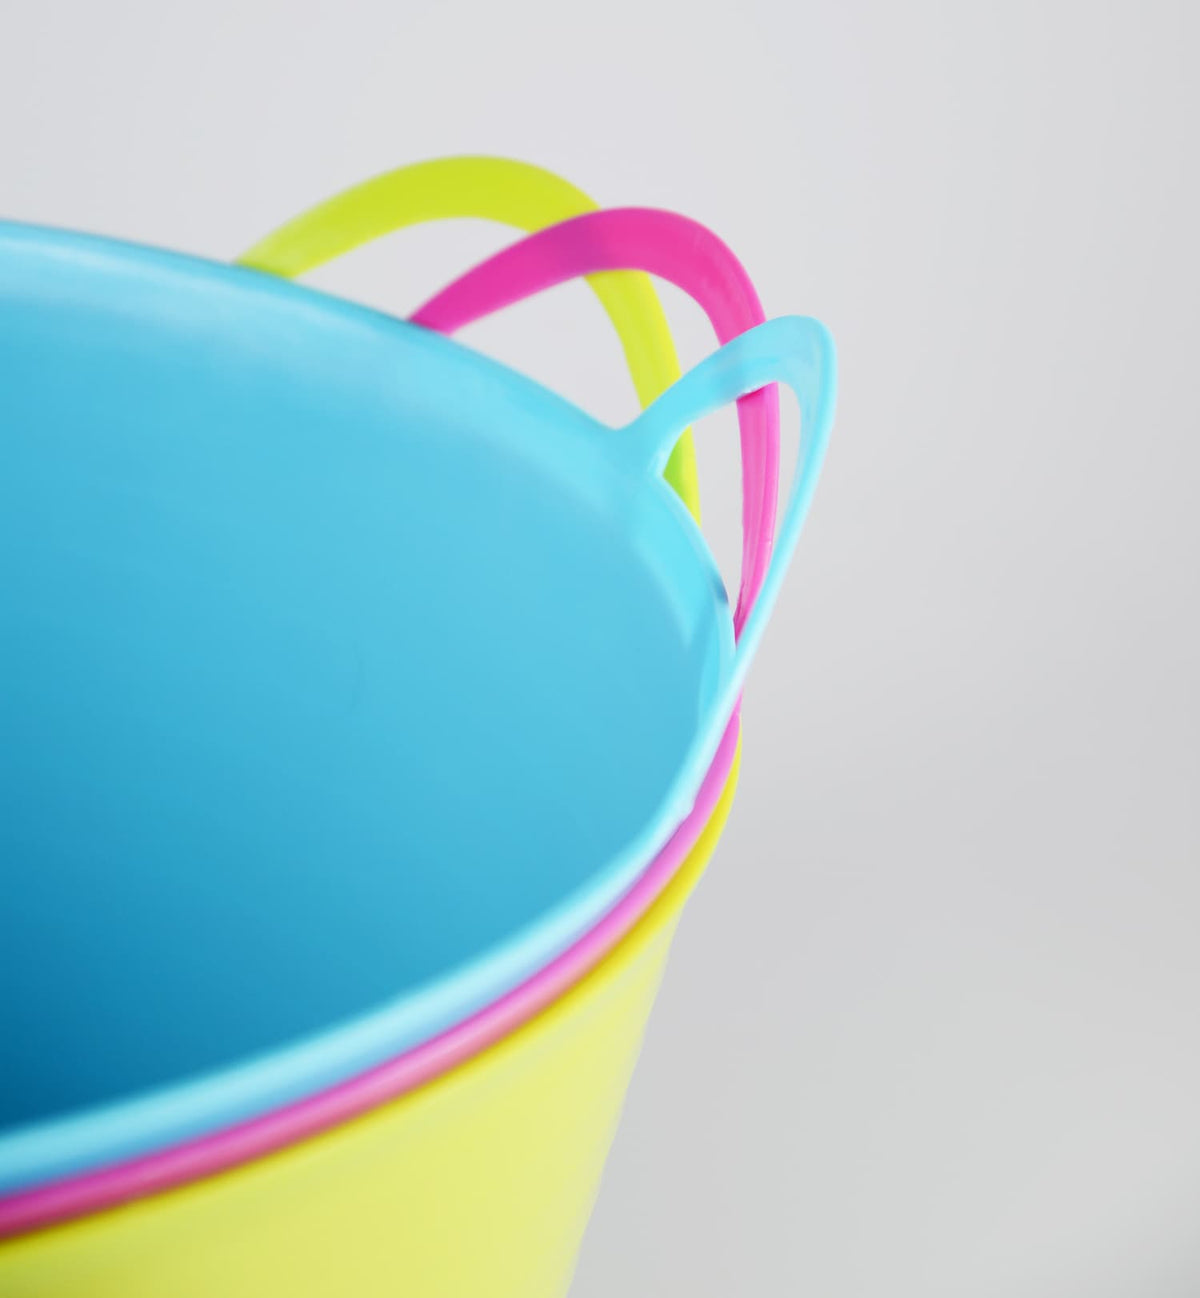 Flexi Toy Tub - Brights